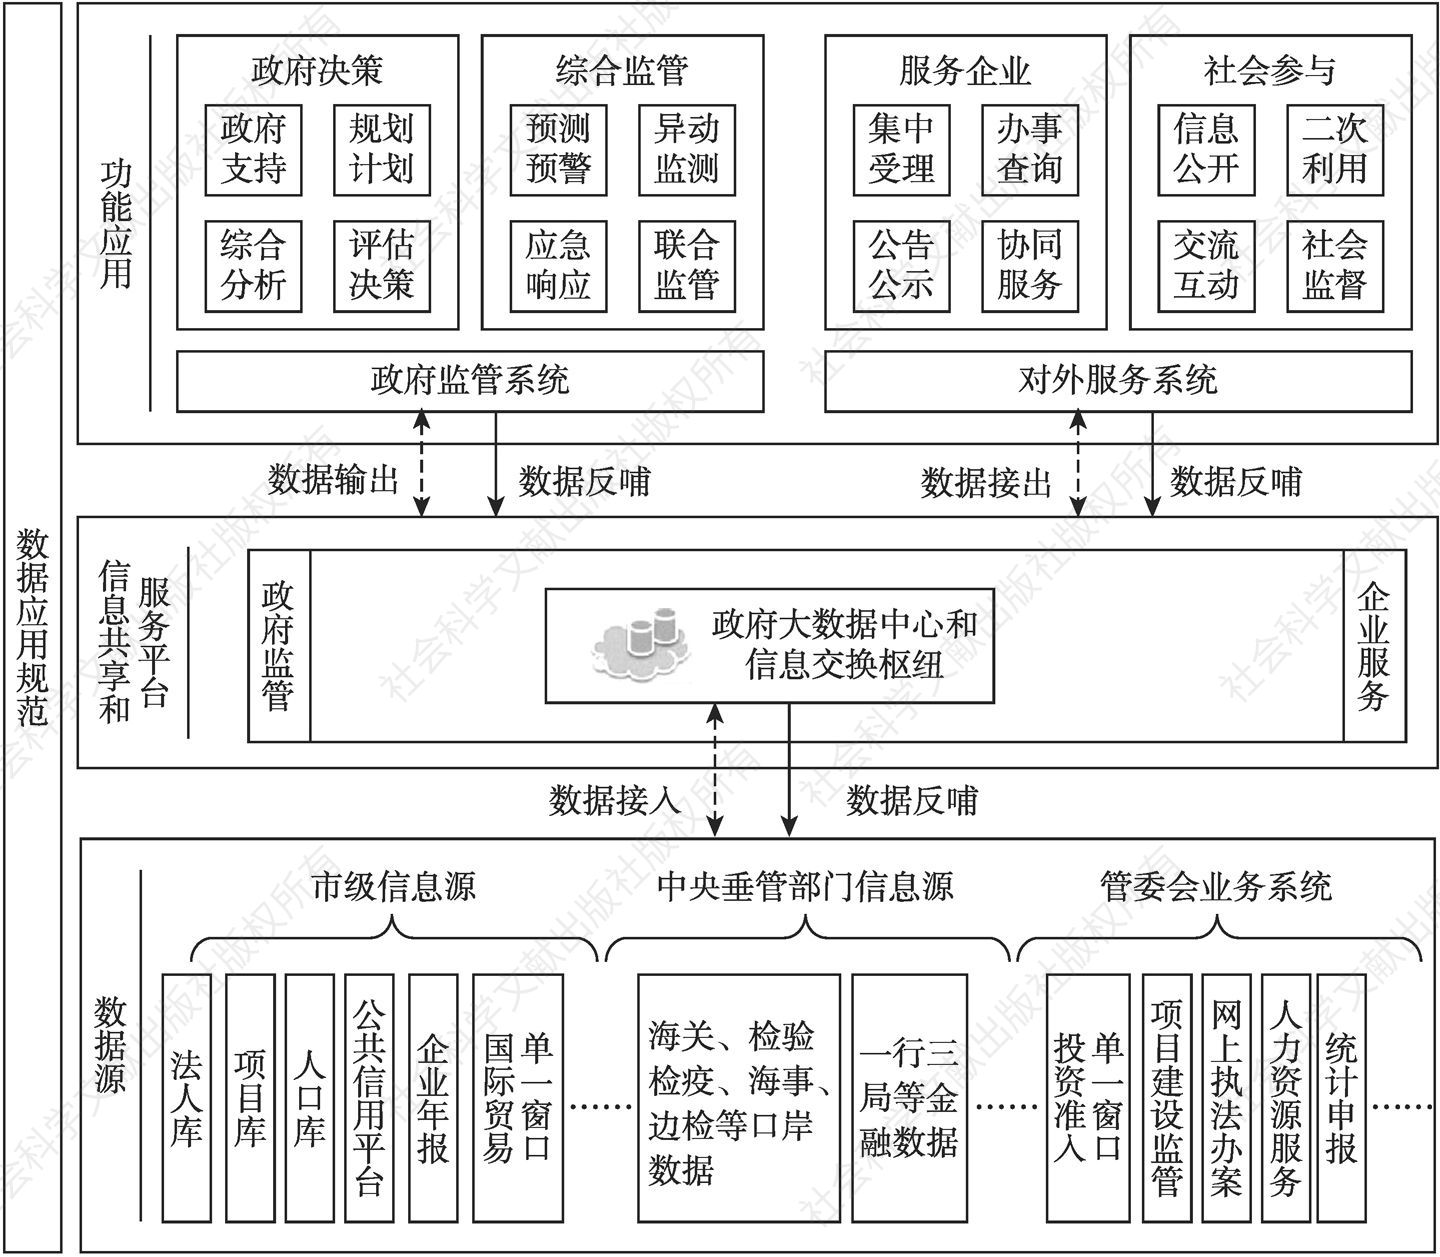 图2 上海自贸区信息共享和服务平台架构